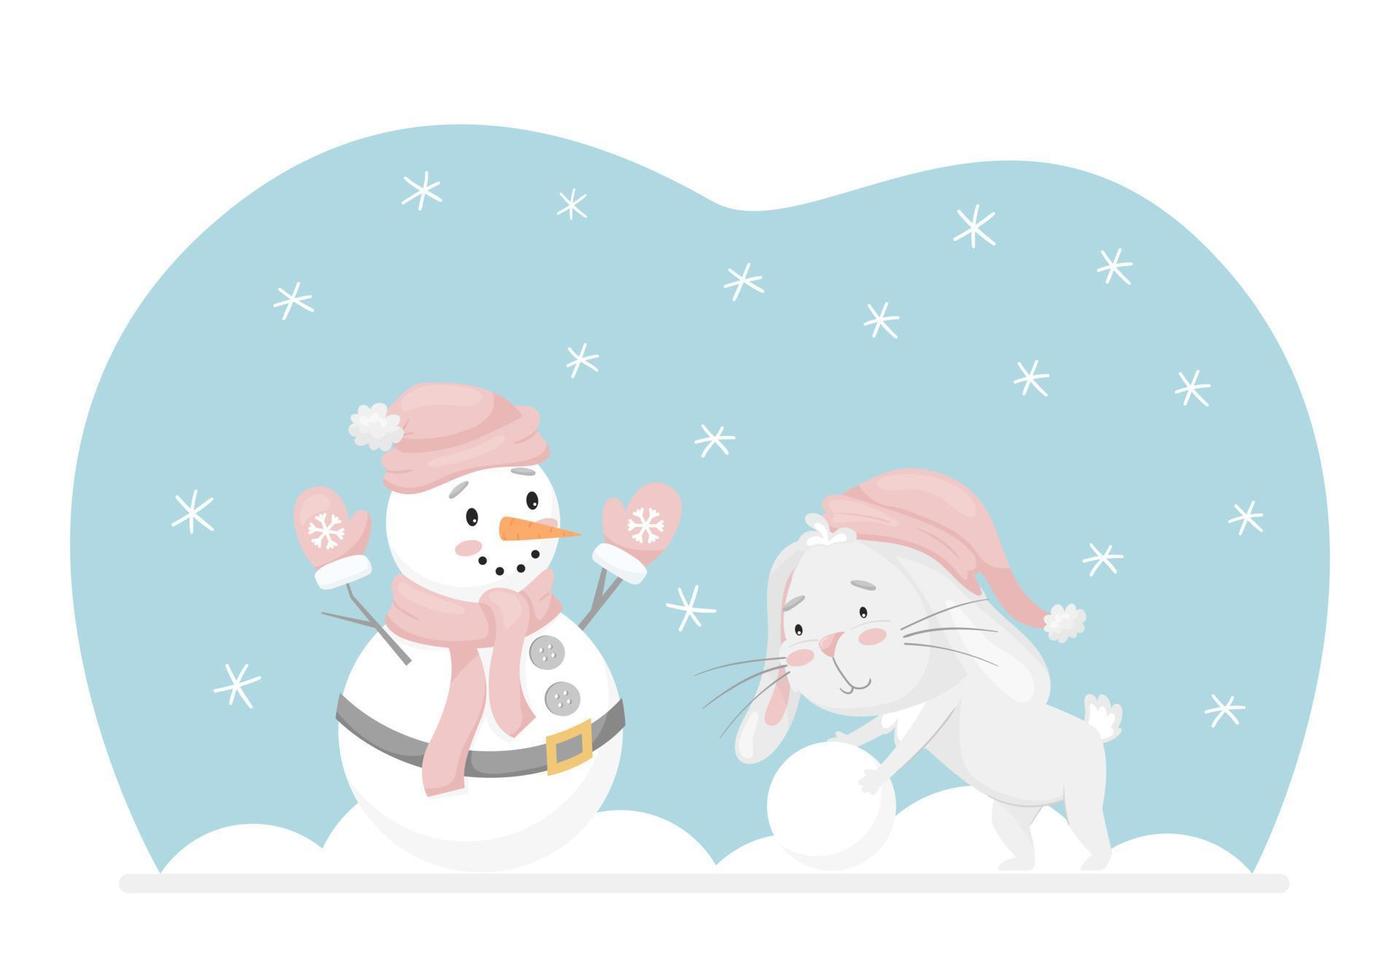 coelho rola uma bola de neve, faz um boneco de neve. atividade divertida de inverno. personagem adorável em tons pastel. crianças projetam para cartões, roupas, web design. ilustração vetorial infantil em um fundo branco vetor